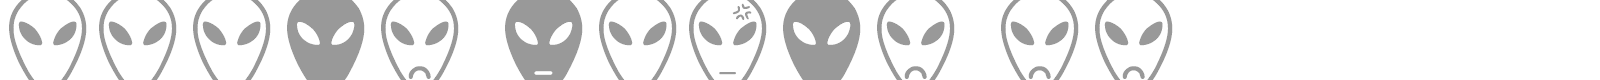 Font Alien Faces